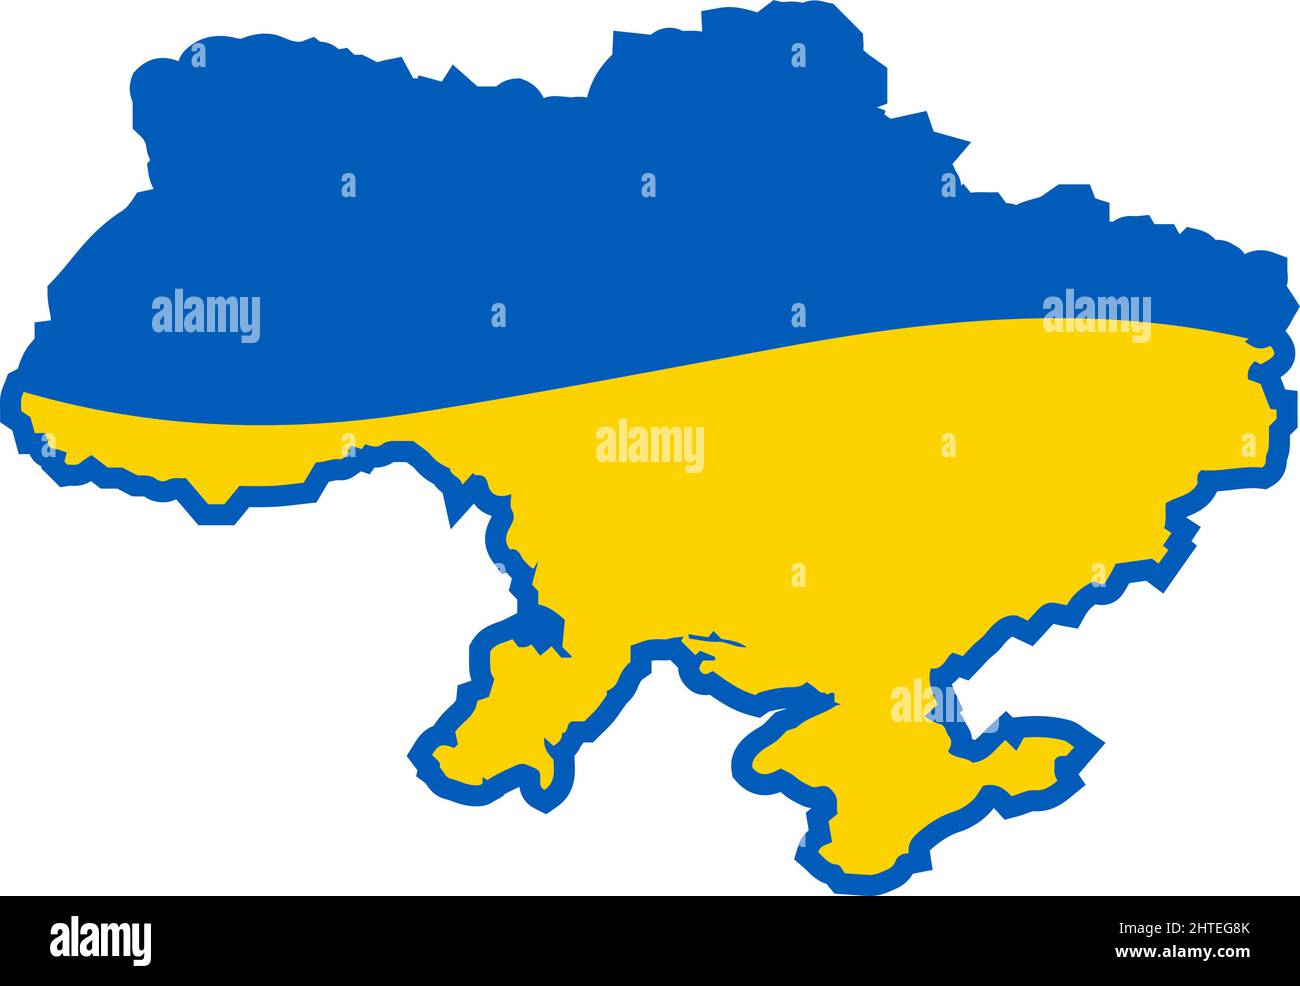 Mappa del territorio dell'Ucraina in colori blu e giallo. Gloria all'Ucraina. Stato indipendente, colore dello stato, colore giallo-blu ucraino.-SupplementalCategor Illustrazione Vettoriale